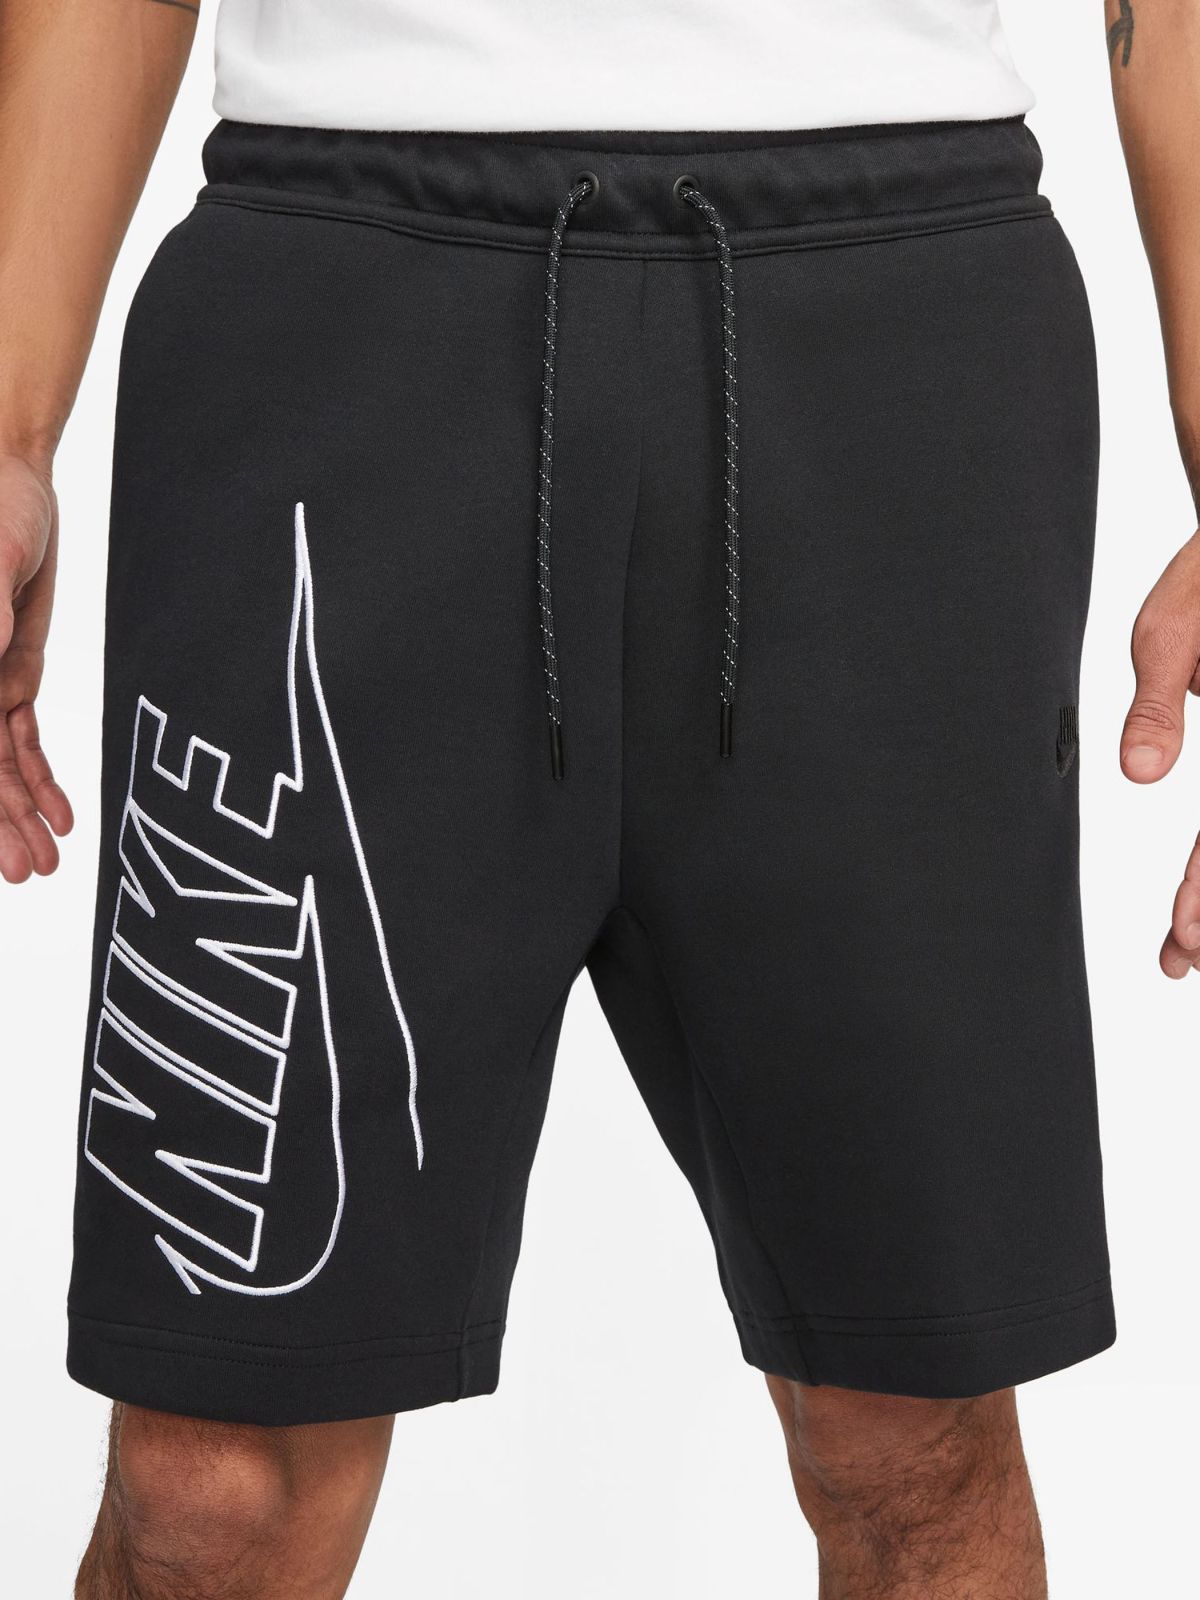  מכנסיים קצרים עם לוגו של NIKE